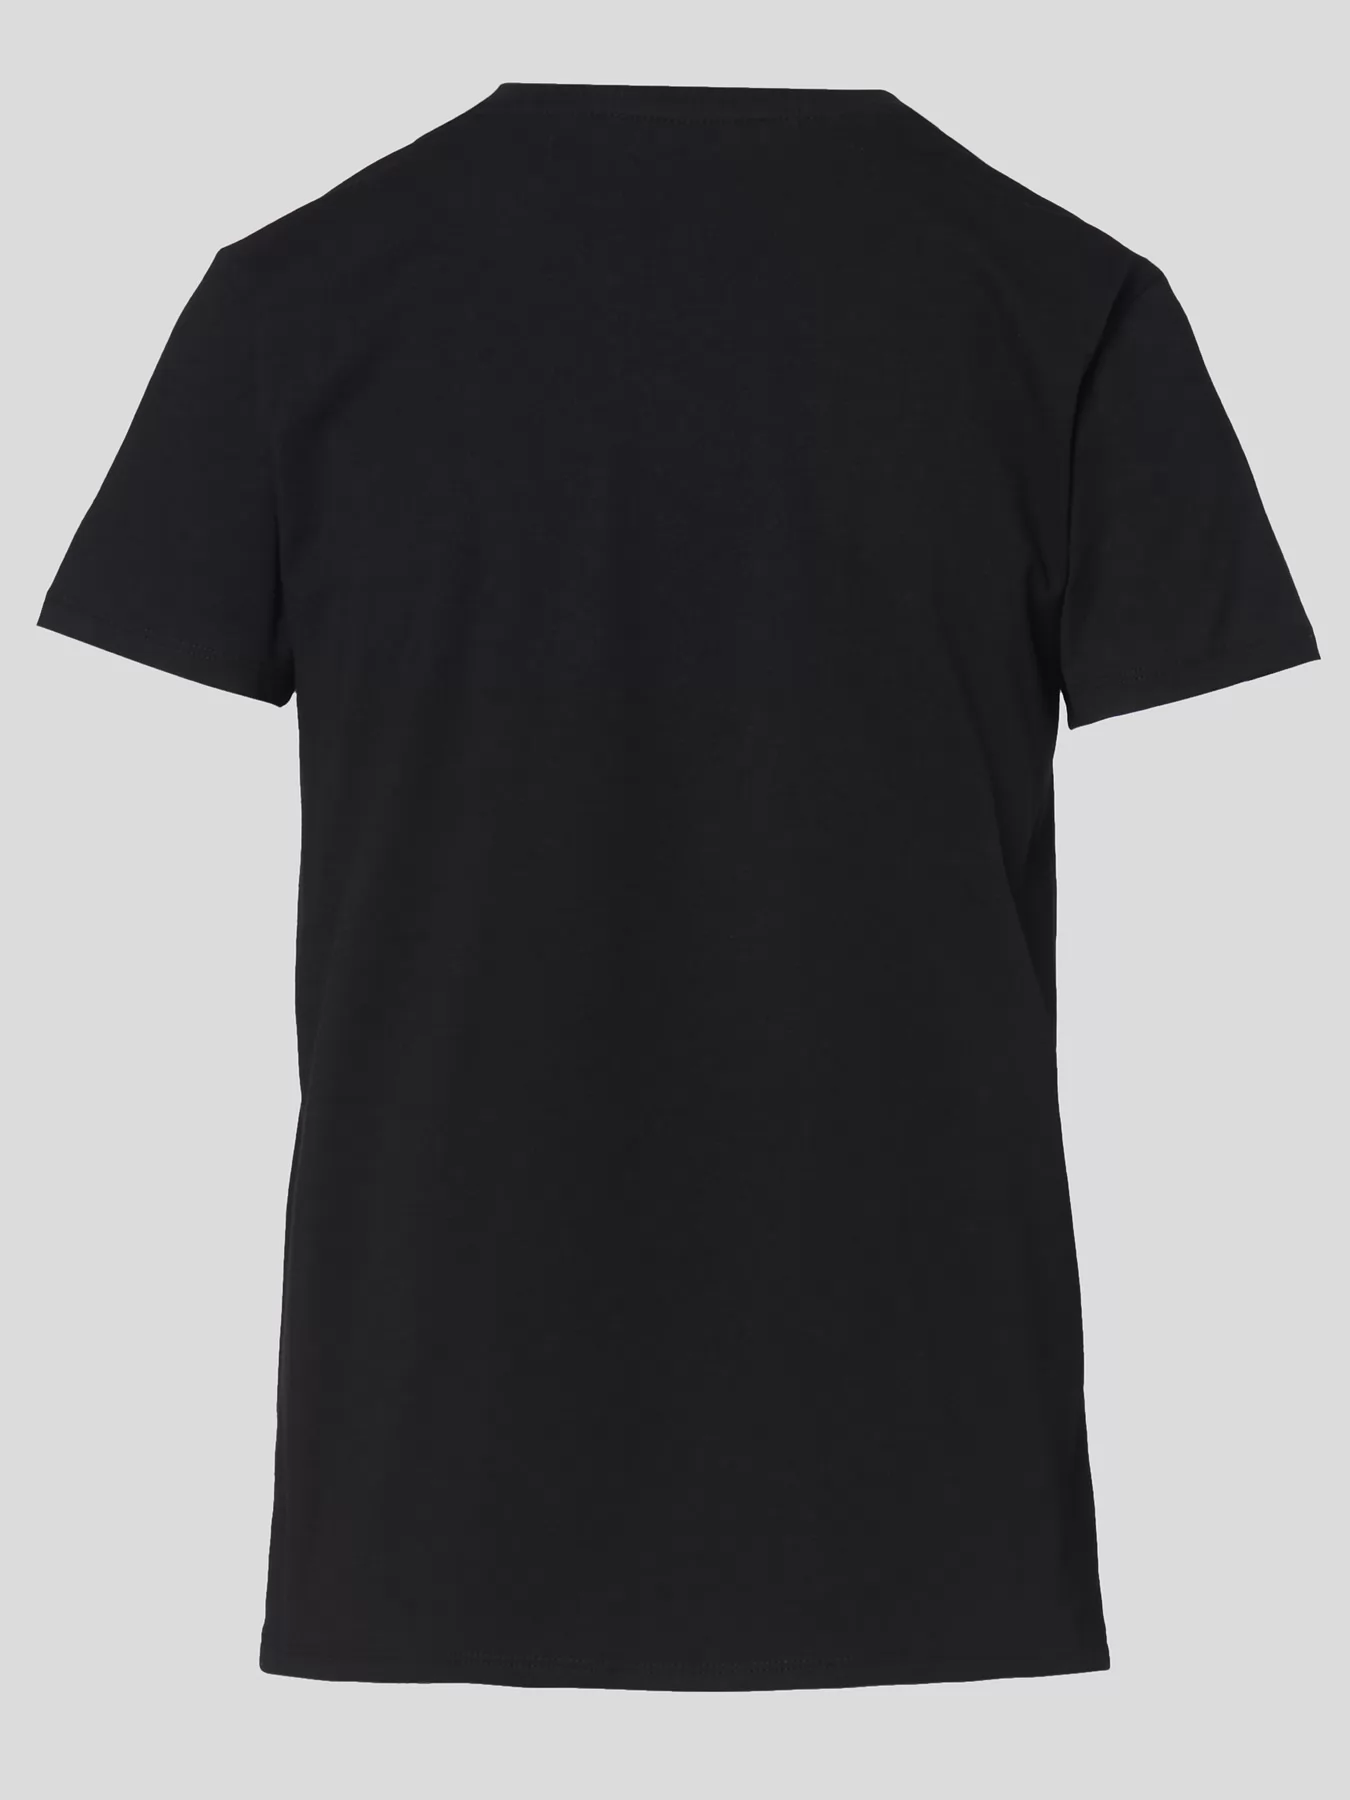  Koszulka damska Karl Lagerfeld 210W1724 - zdjęcie 3